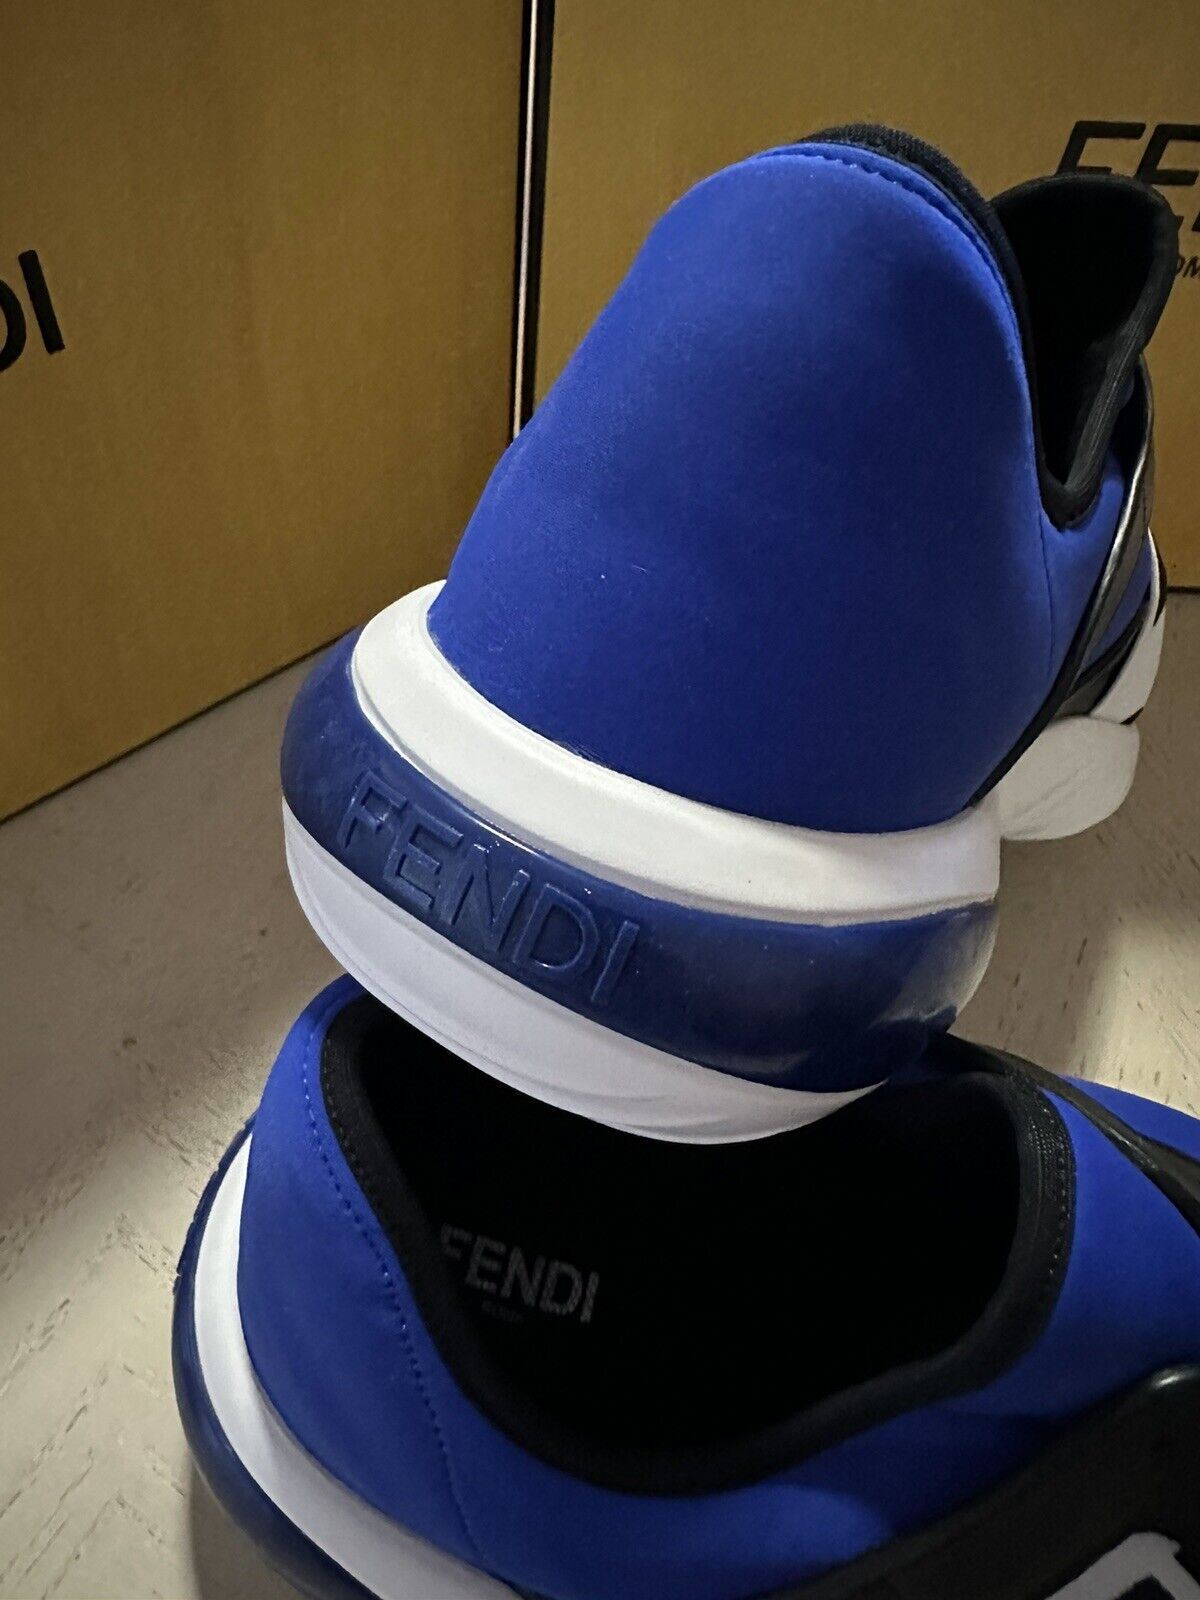 NIB $980 Fendi Men Forever Fendi Runner Sneakers Shoes White/Blue 9 US/42 Eu